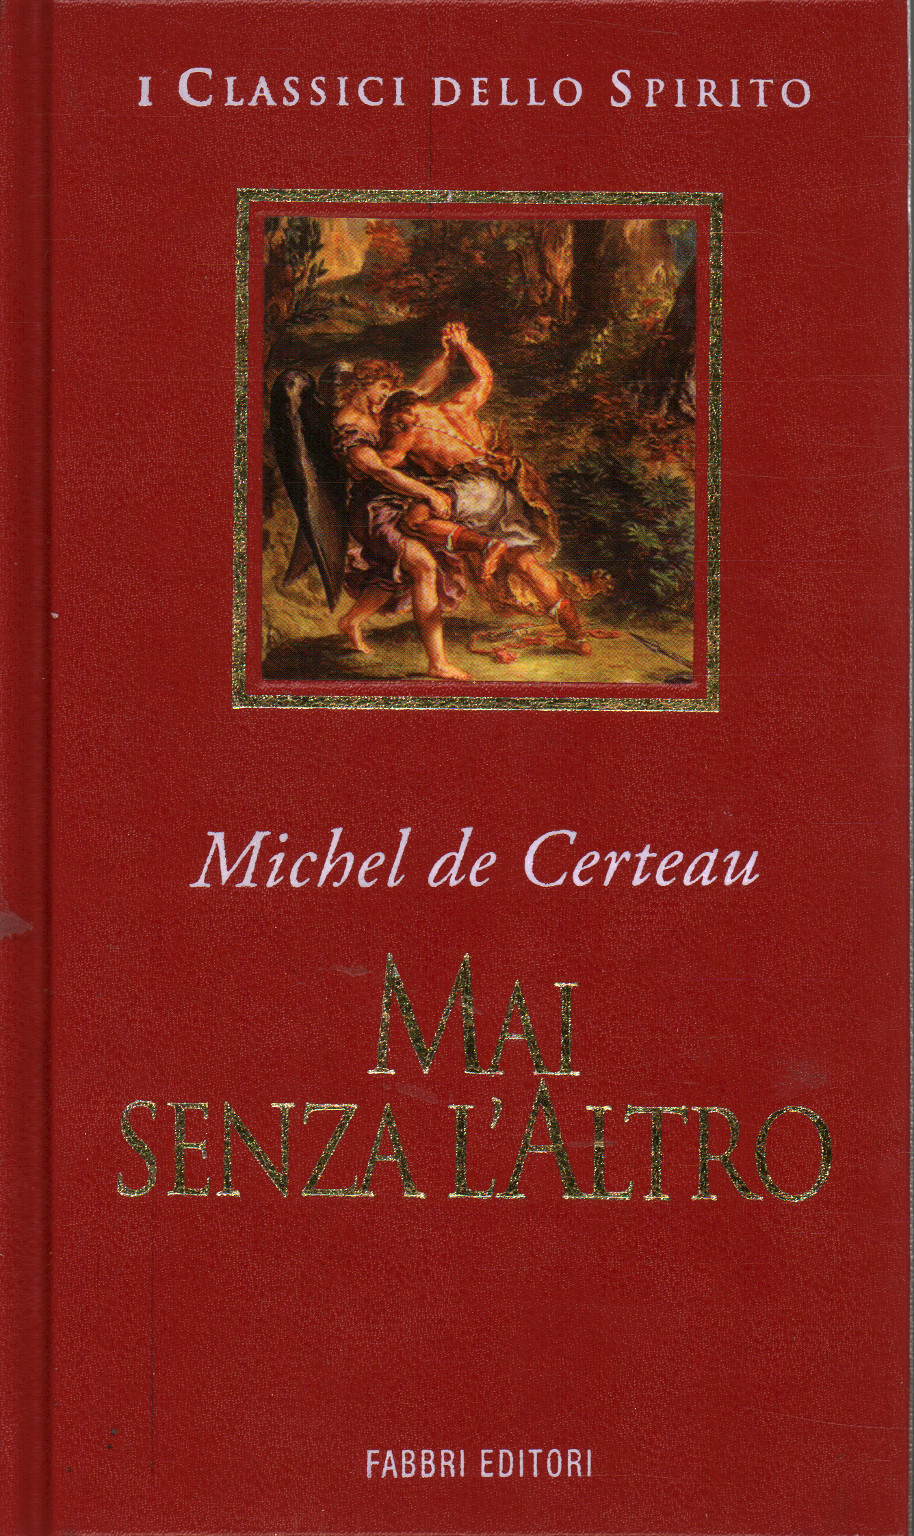 Nunca sin el otro, Michel de Certau